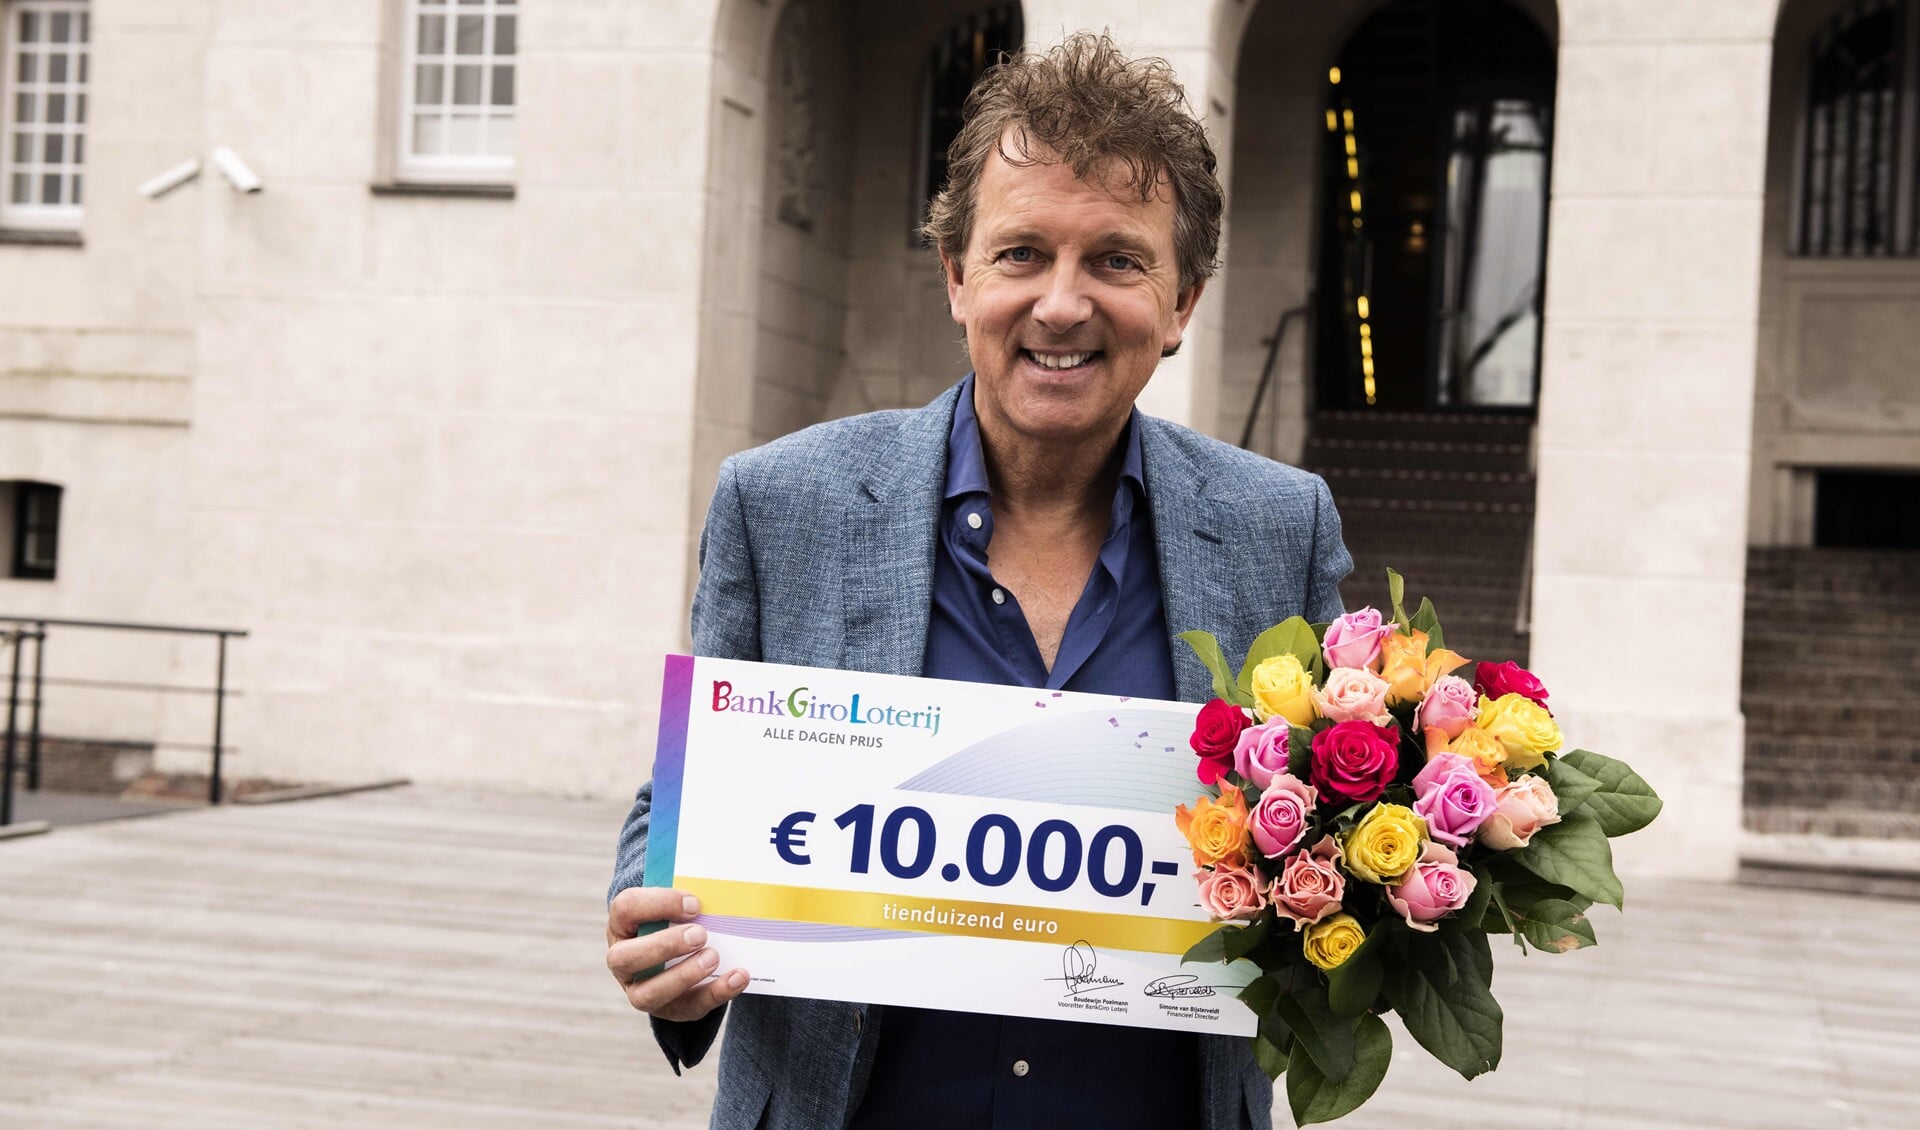 BankGiro Loterij-ambassadeur Robert ten Brink met de cheque van 10.000 euro (foto: Jurgen Jacob Lodder).